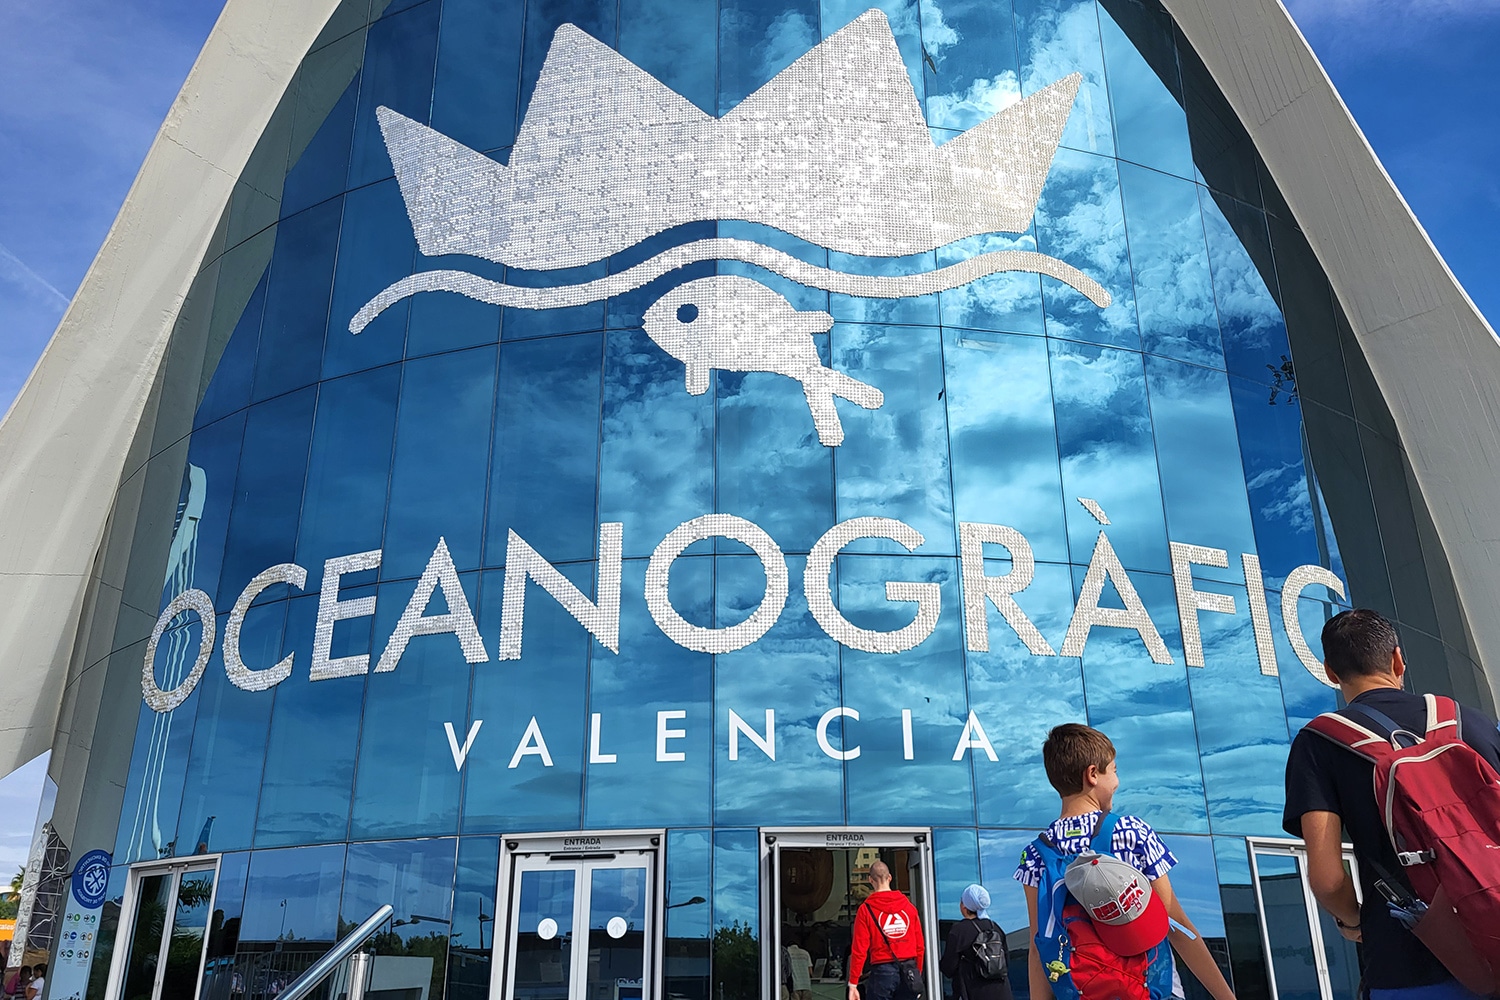 Oceanografico di Valencia, ingresso